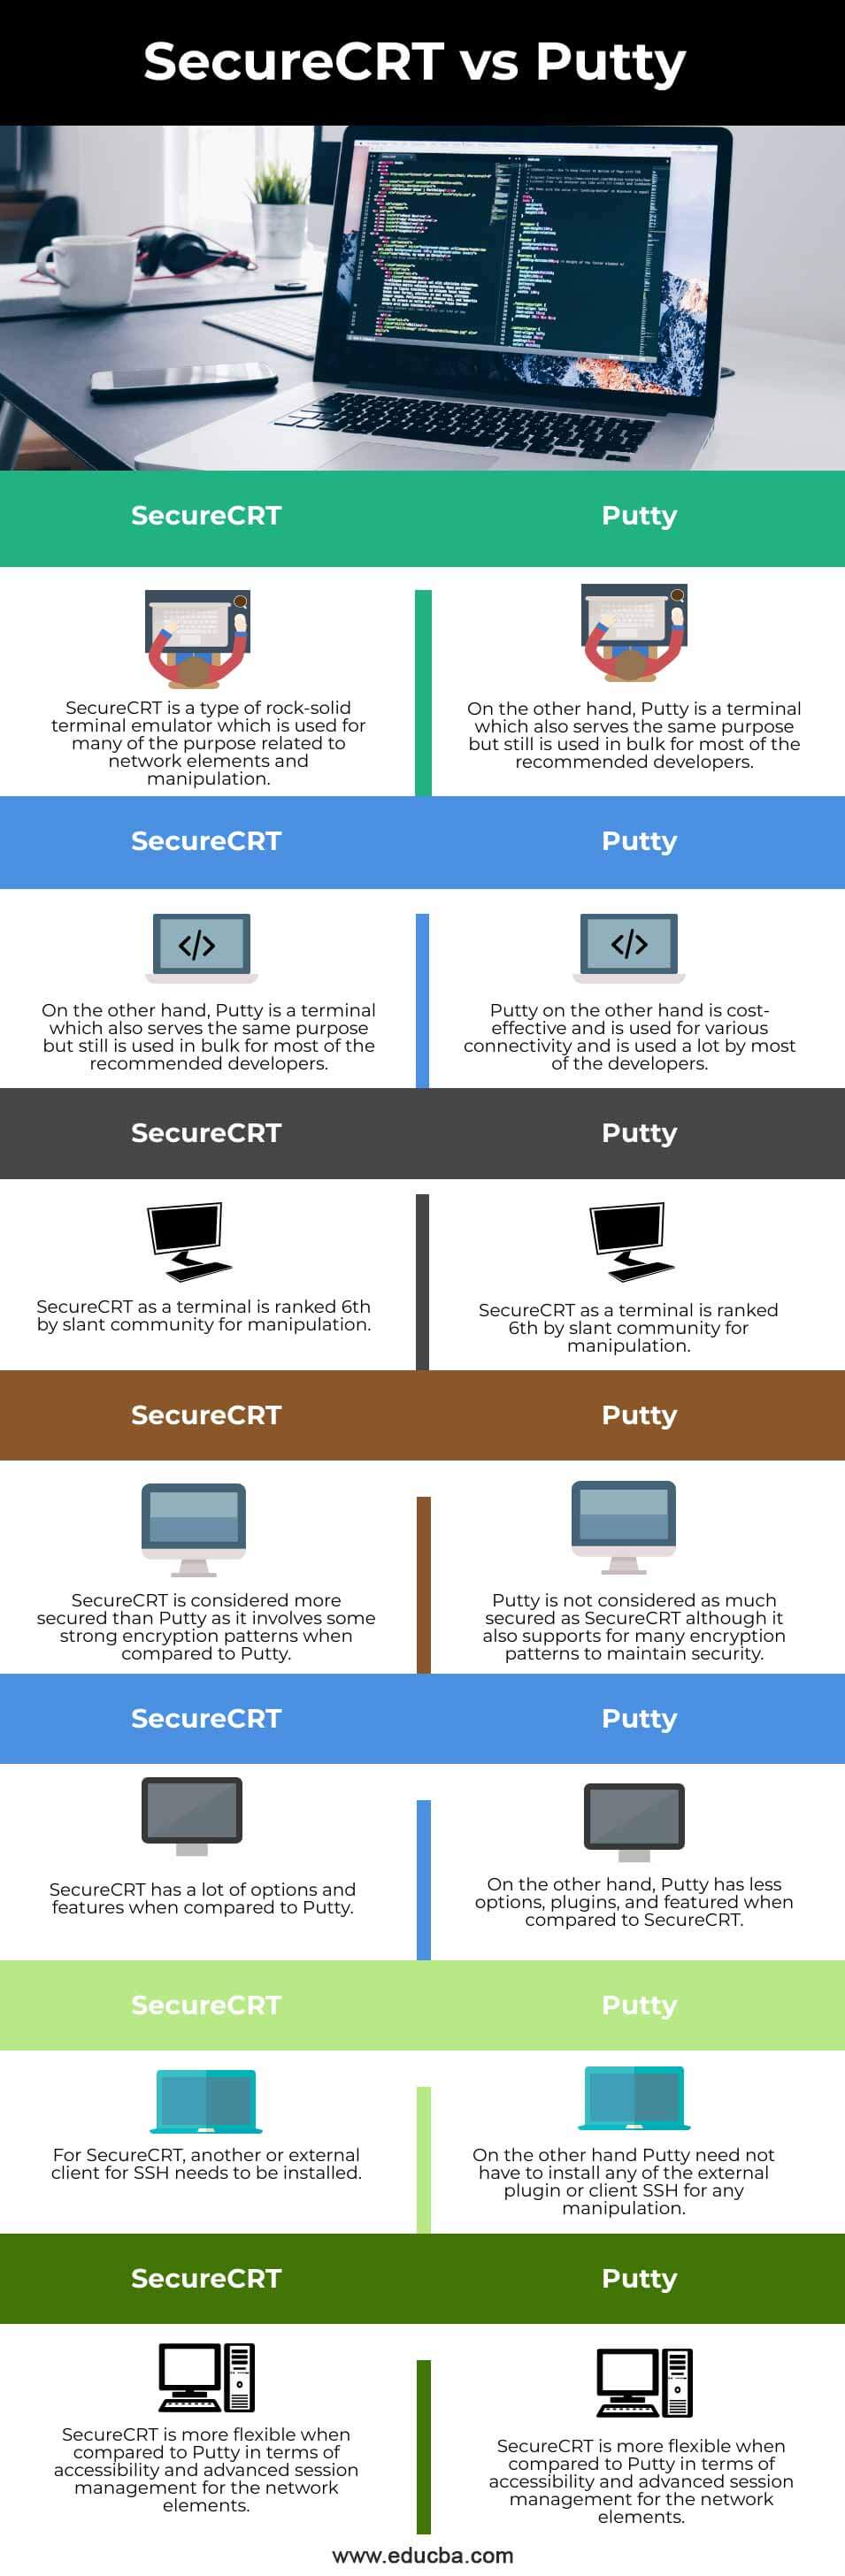 SecureCRT-vs-Putty-info